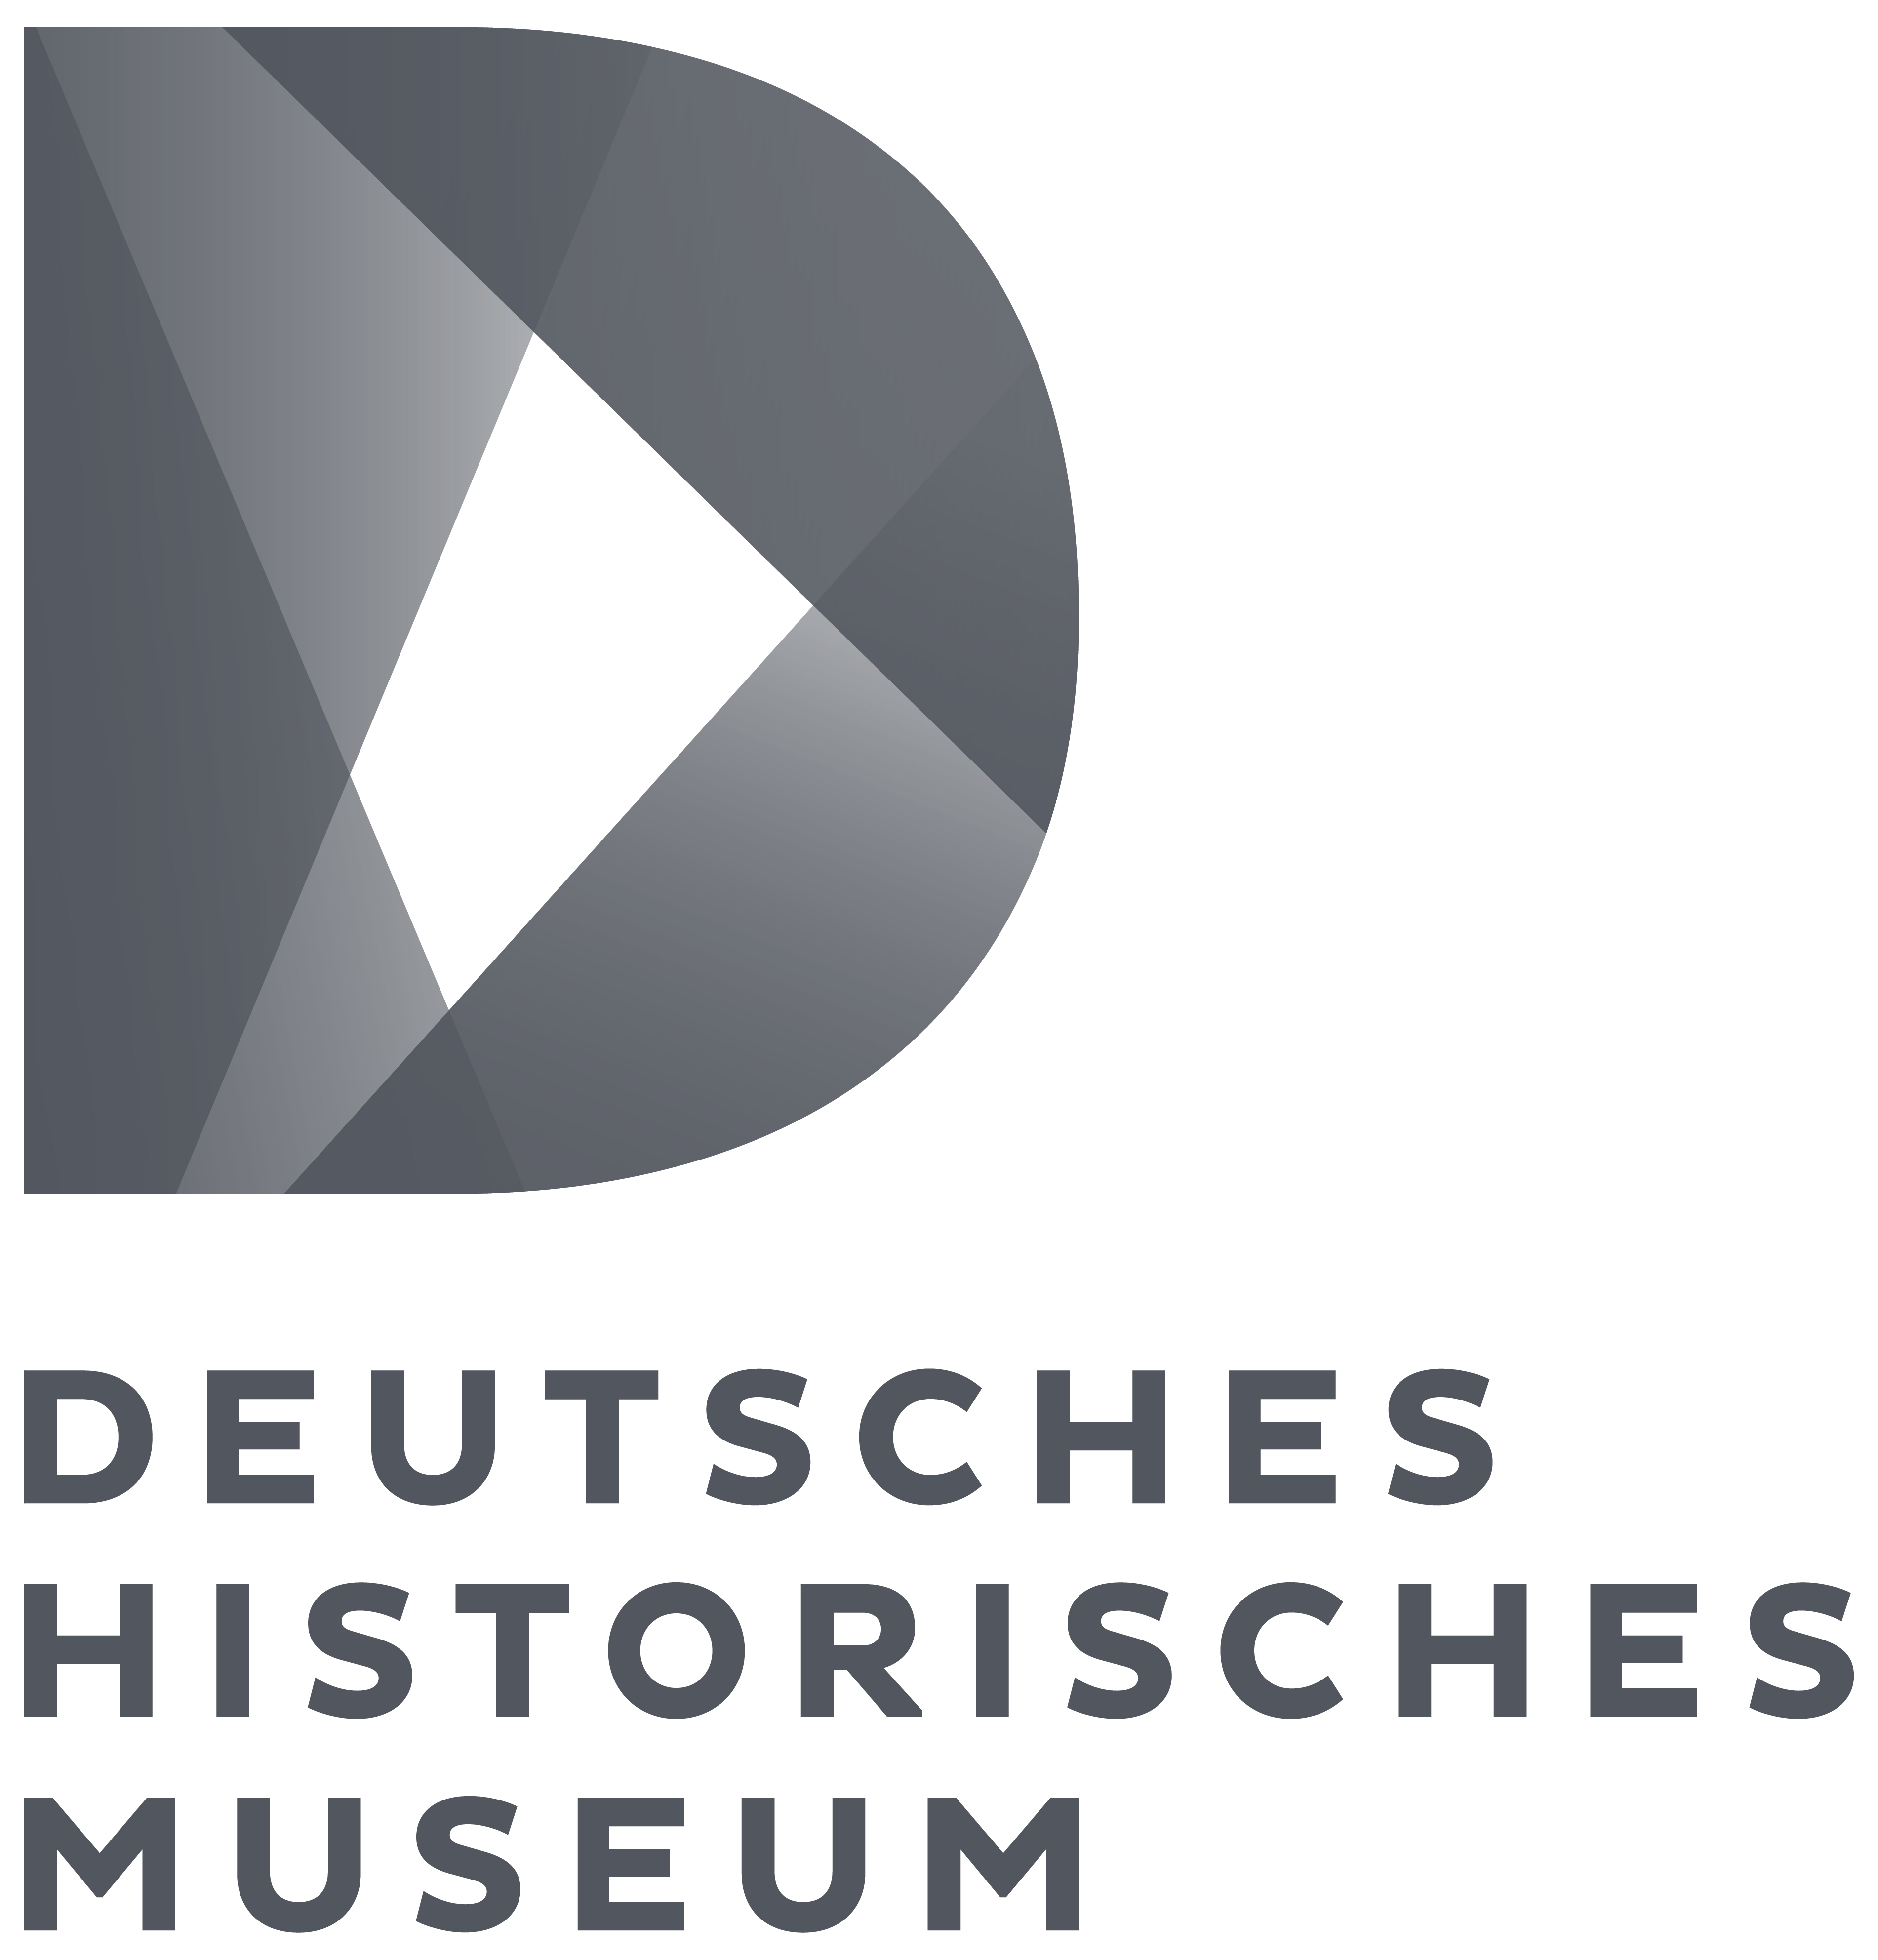 Deutsches historisches museum-p co (2)